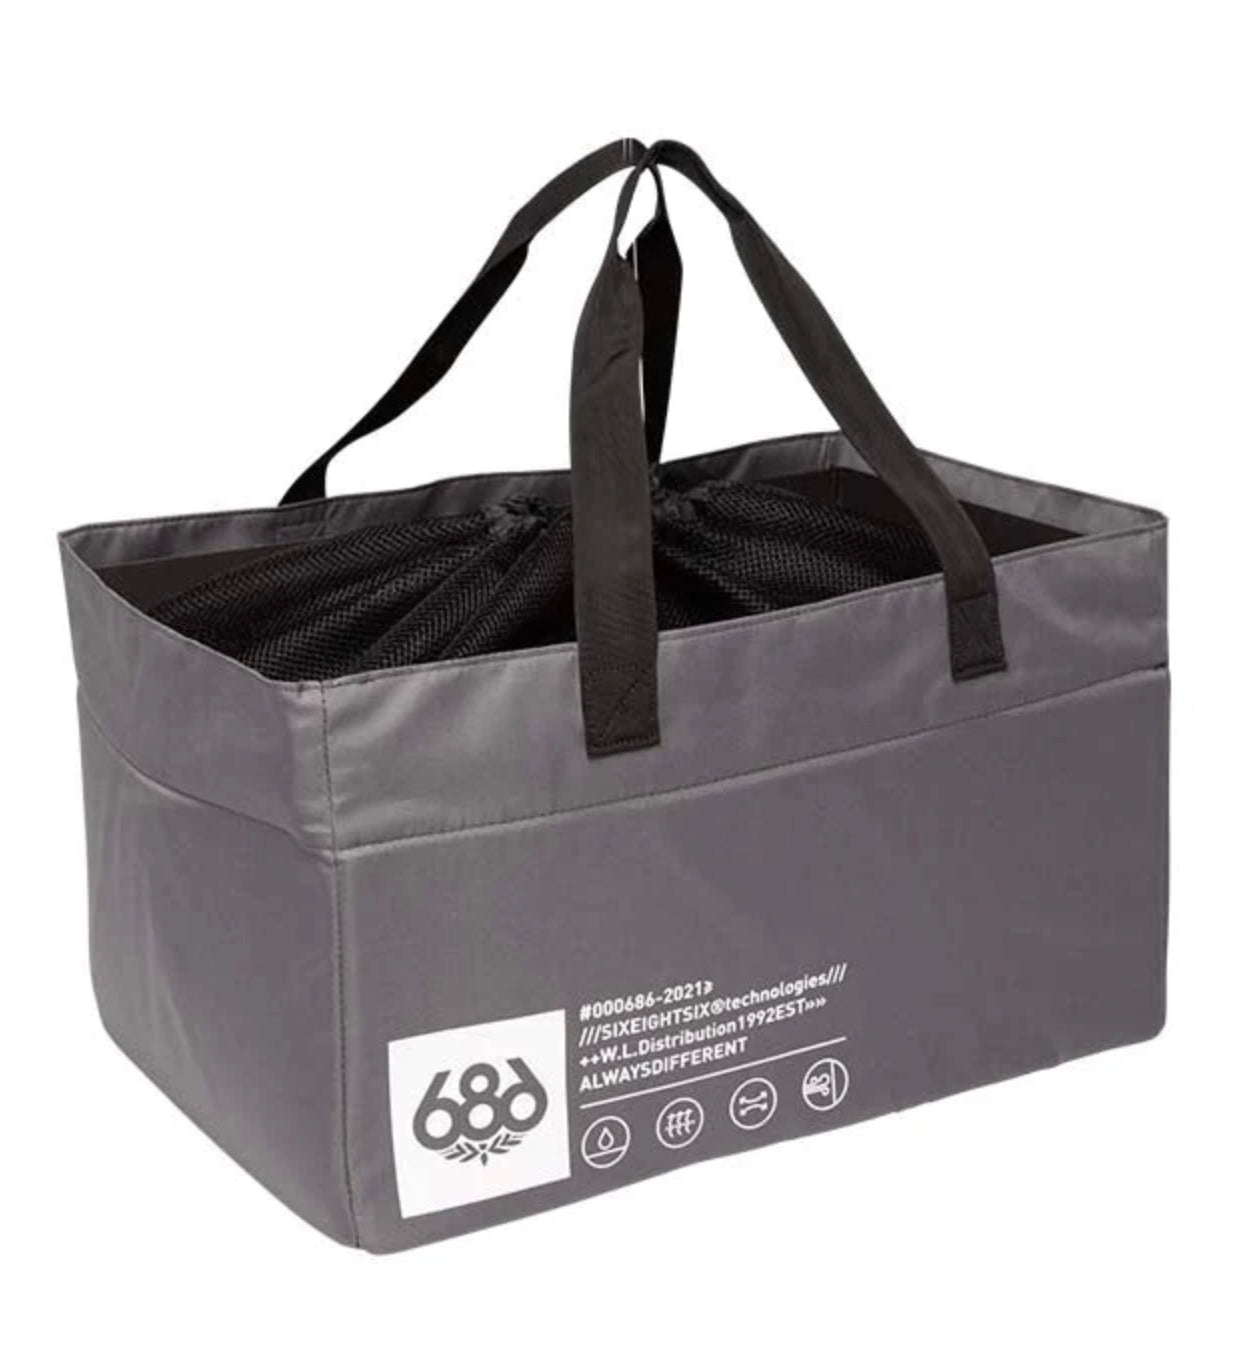 686 - Storage Gear Bag